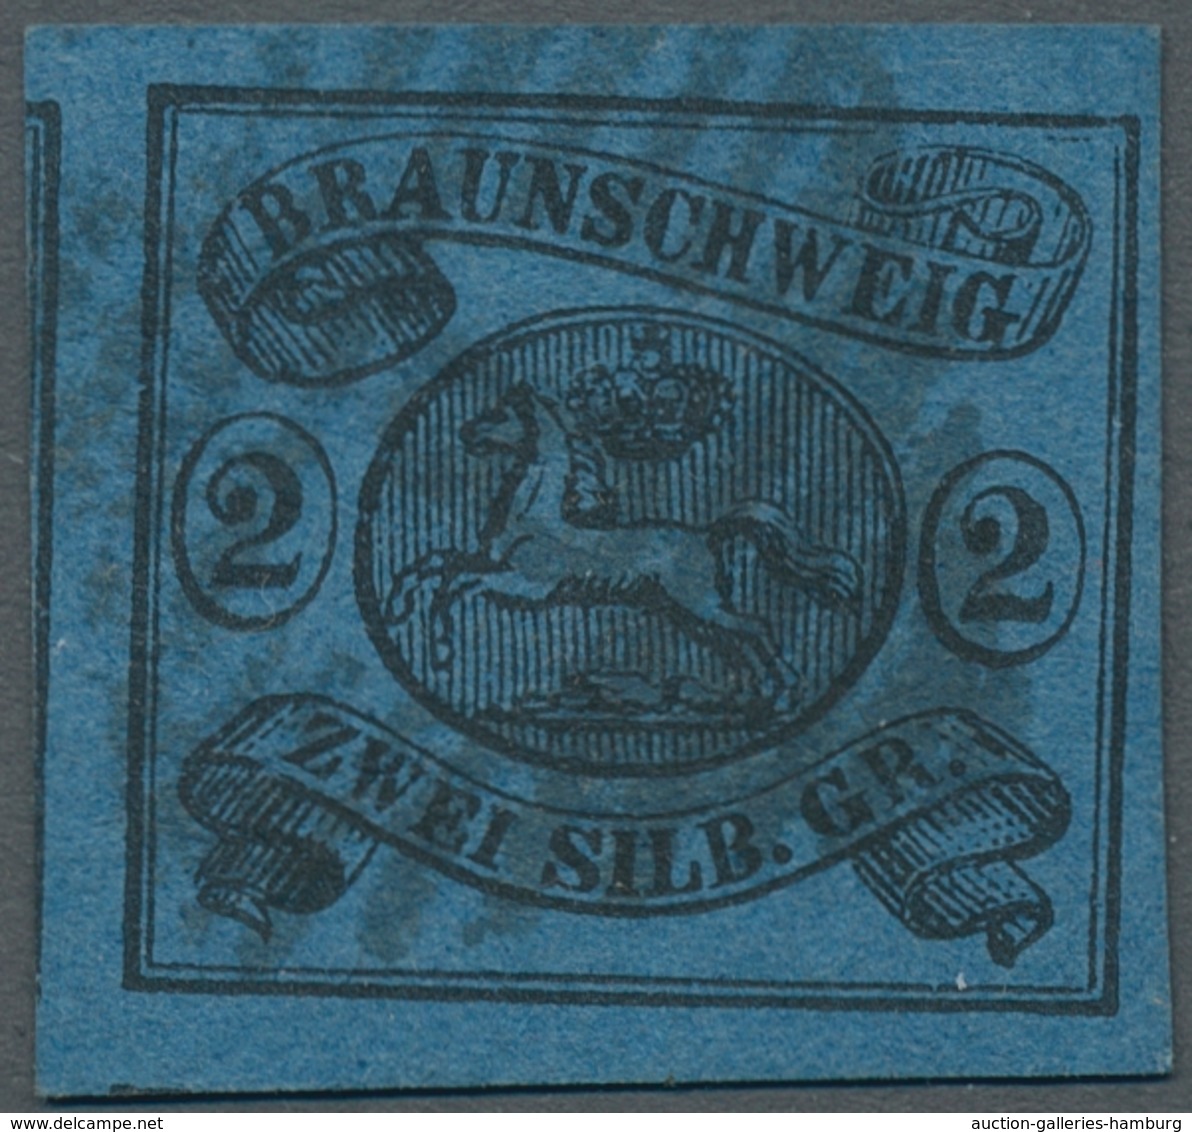 Braunschweig - Marken und Briefe: 1852/1865; ausserordentlich reichhaltige Sammlung der Markenausgab